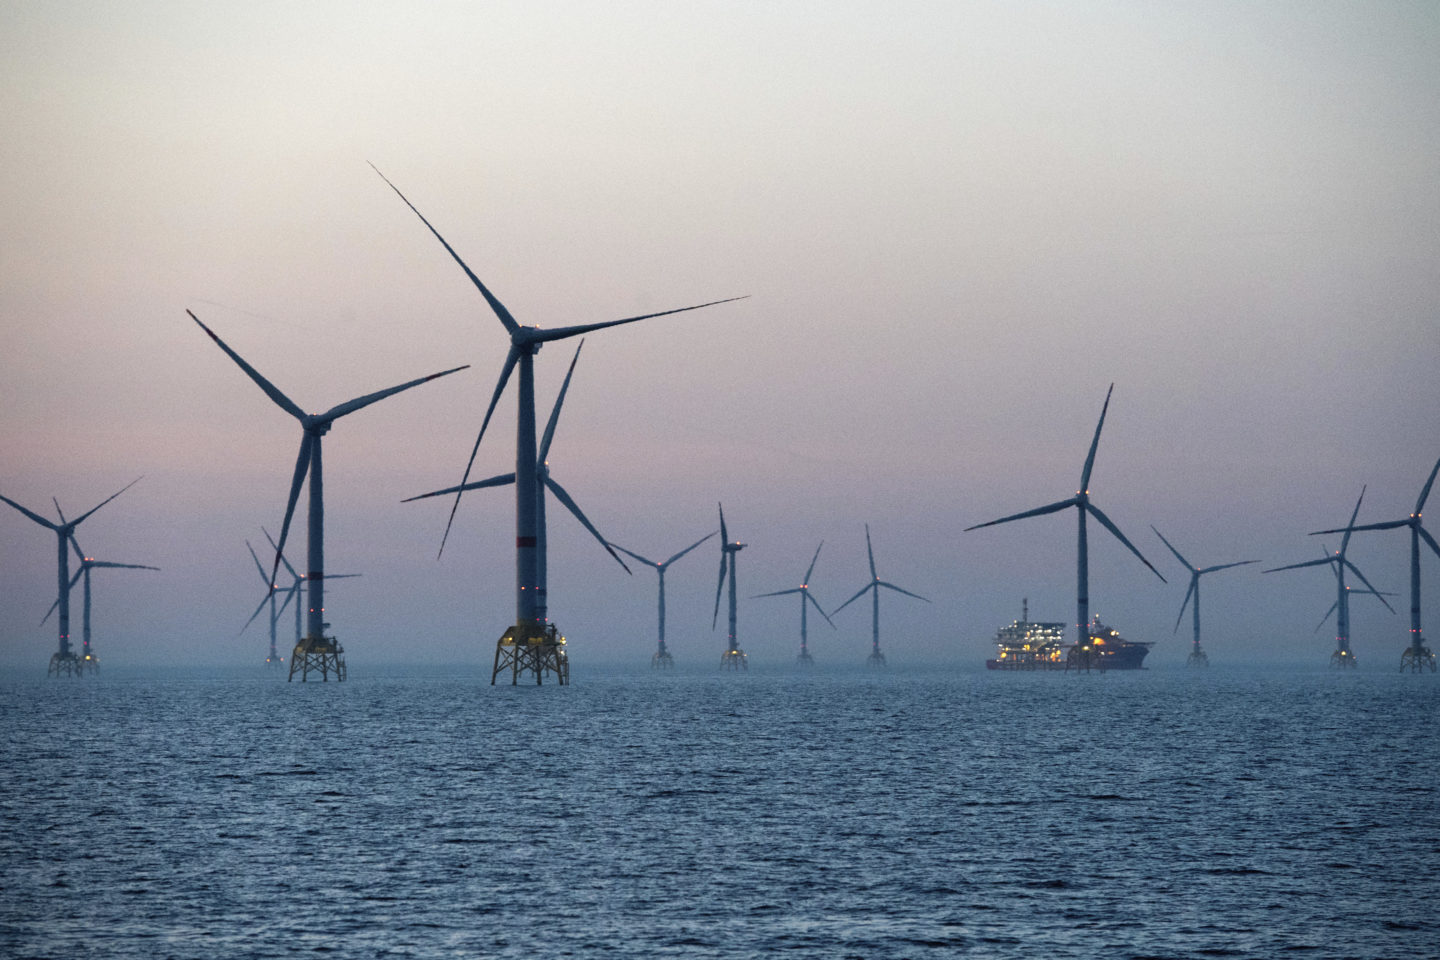 Αιολική ενέργεια: Τεράστιο project στη Βόρεια Θάλασσα από Γερμανία, Δανία, Ολλανδία και Βέλγιο – Την Τετάρτη η ανακοίνωση